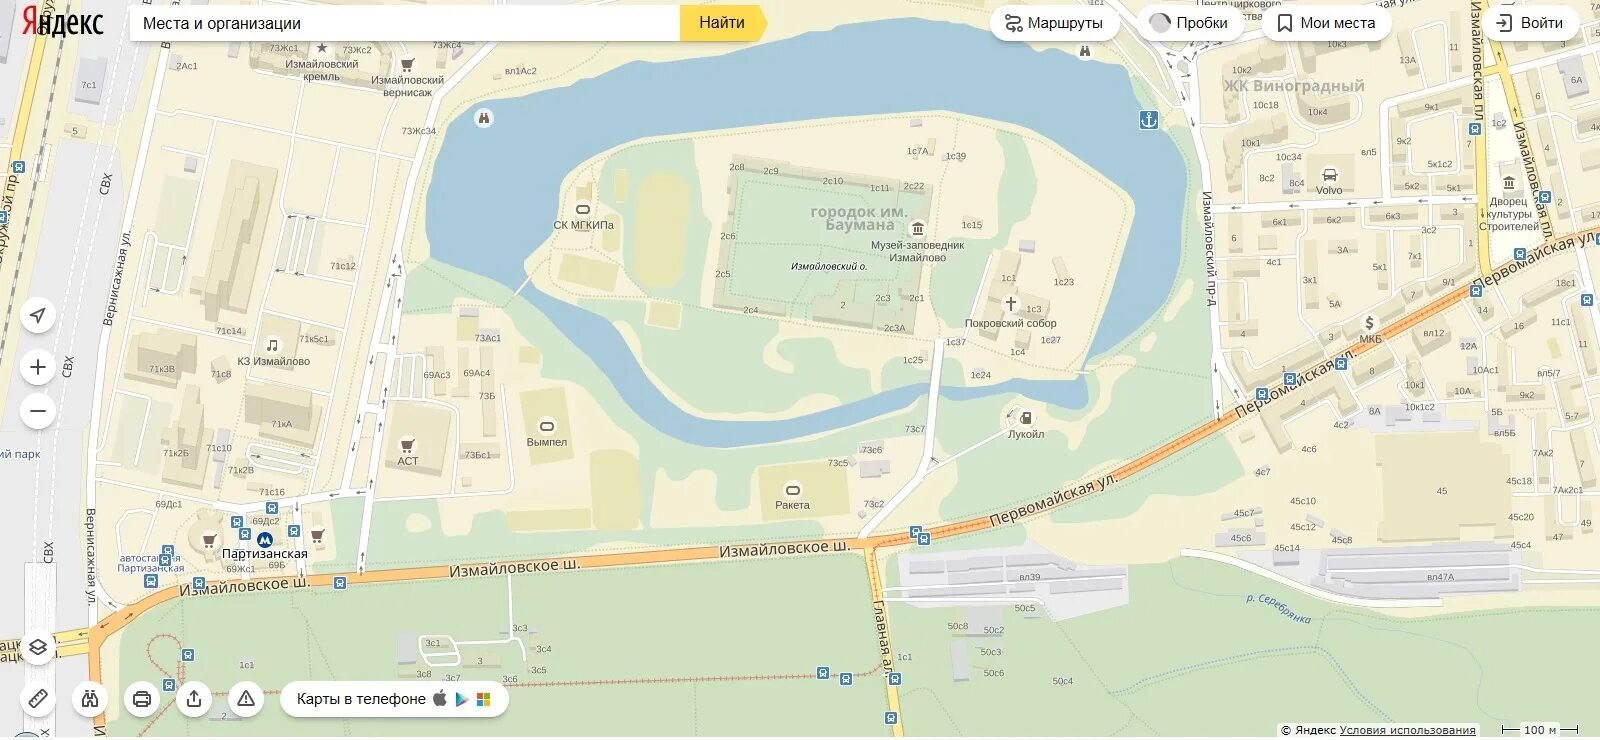 Карта метро москвы измайлово. Кремль в Измайлово план схема. Музей заповедник Измайлово карта. Измайлово усадьба Измайлово карта. Измайловский Кремль на карте Измайловского парка.